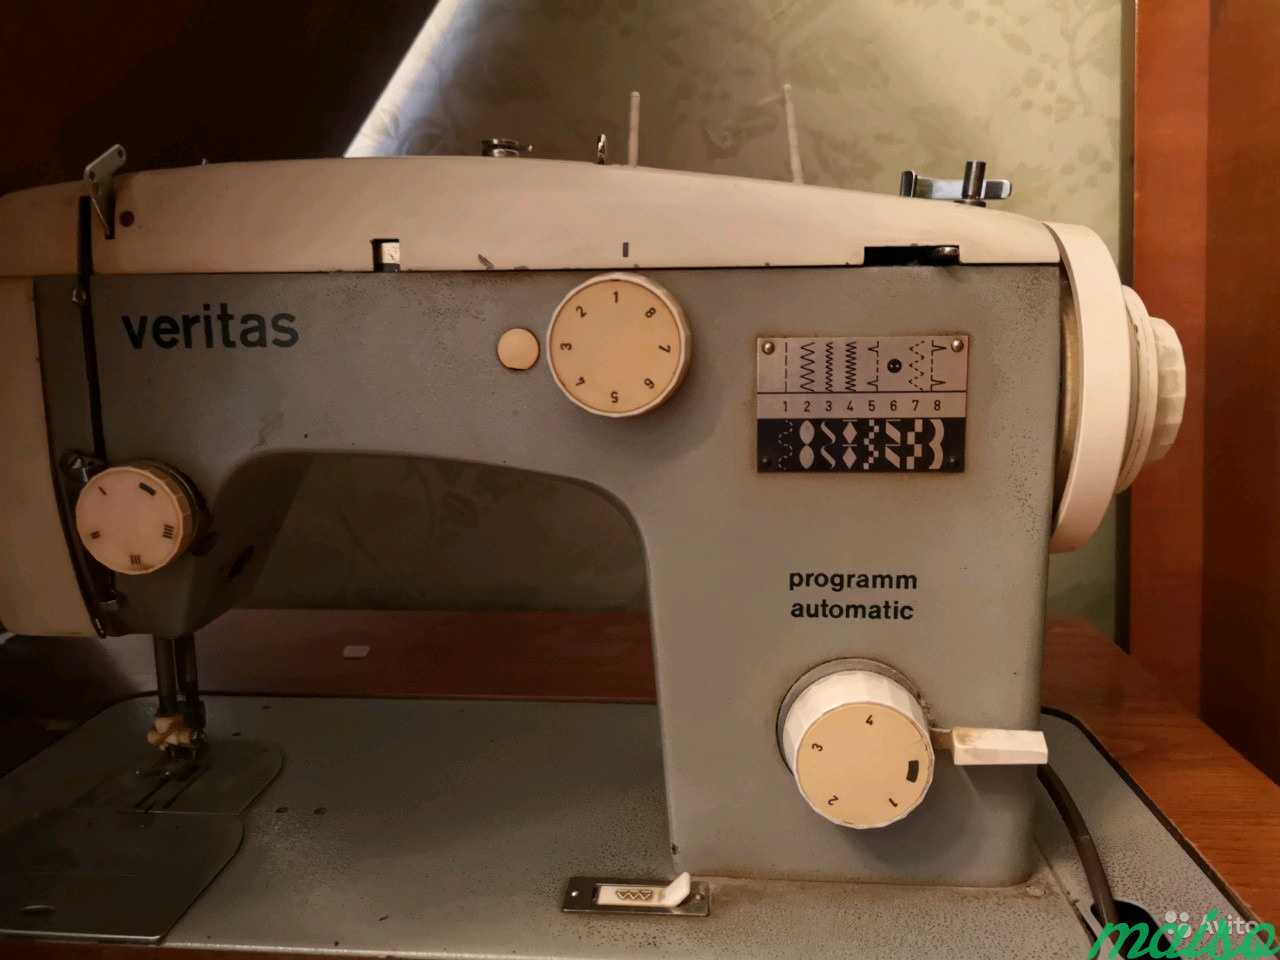 Авито машинка веритас. Швейная машинка Веритас. Промышленная швейная машинка Веритас со столом il-5550. Швейная машинка veritas программ автоматика. Veritas Programm Automatic Швейные машины Старая.